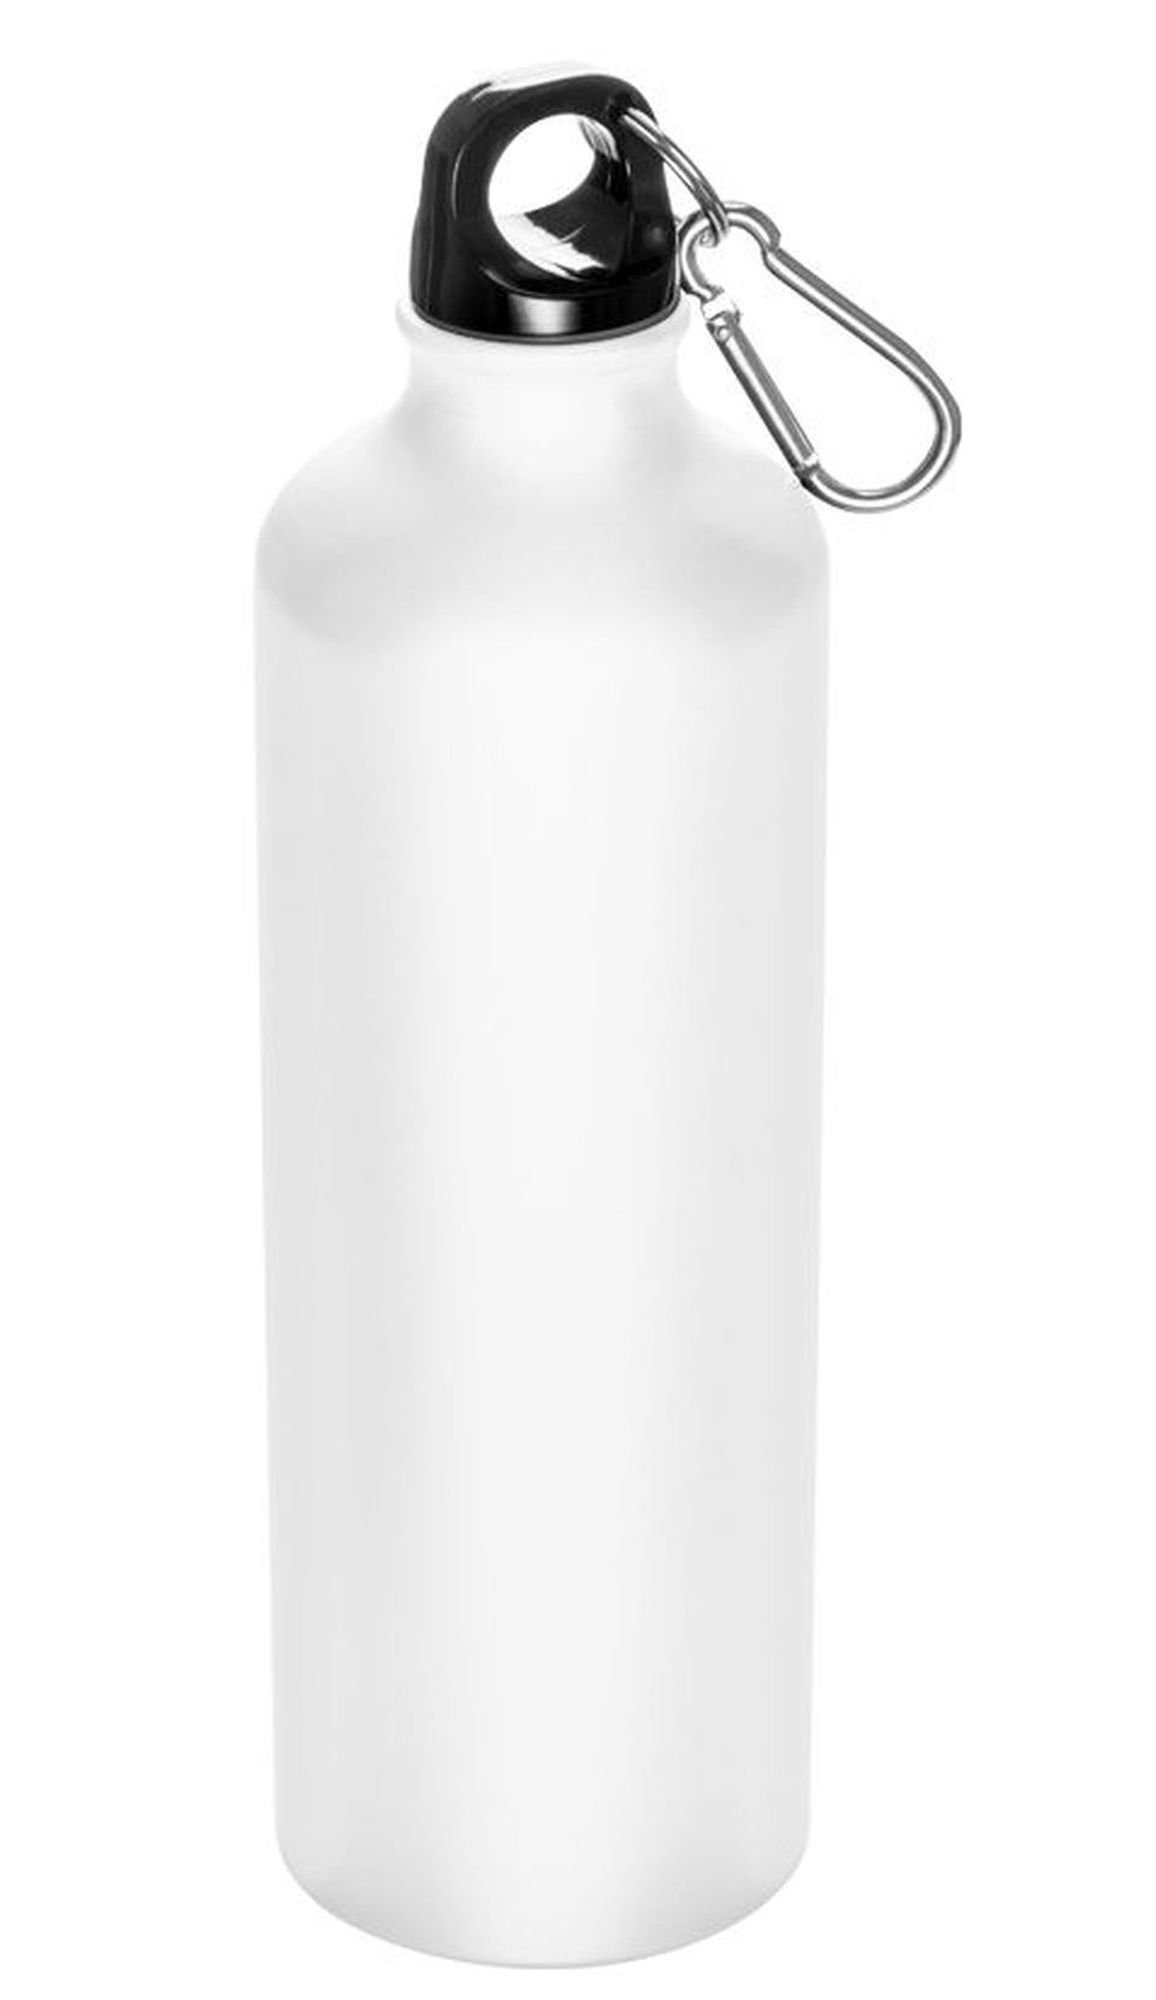 Metall mit Trinkflasche Weiß 800ml Sportflasche Trinkflasche Feelino Wasserflasche